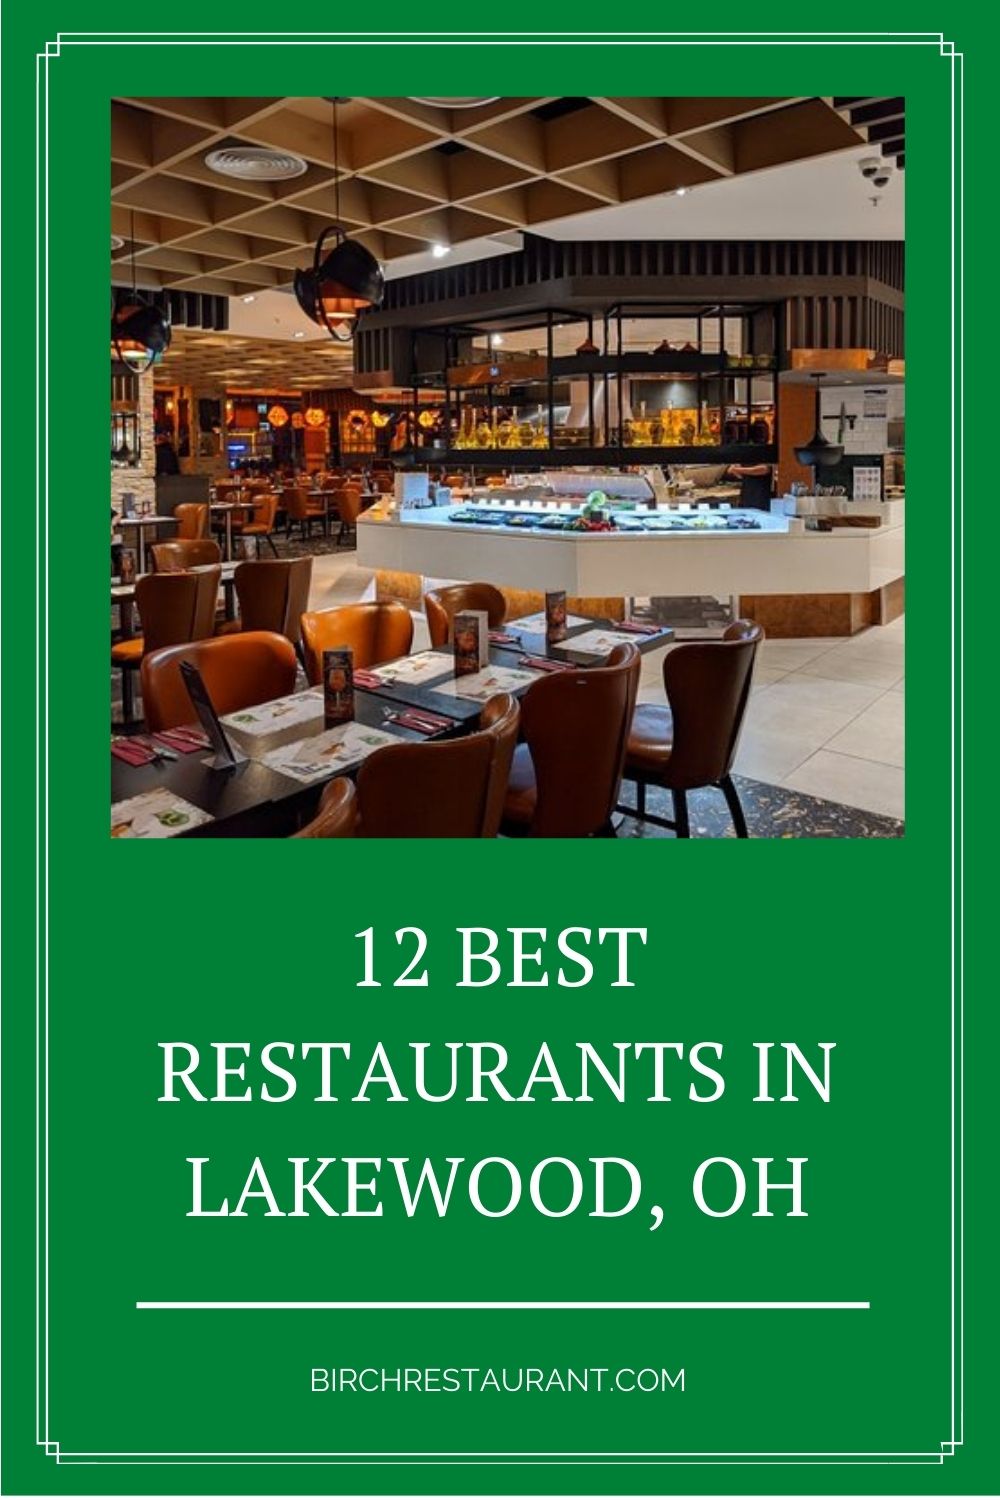 Best Restaurants in Lakewood